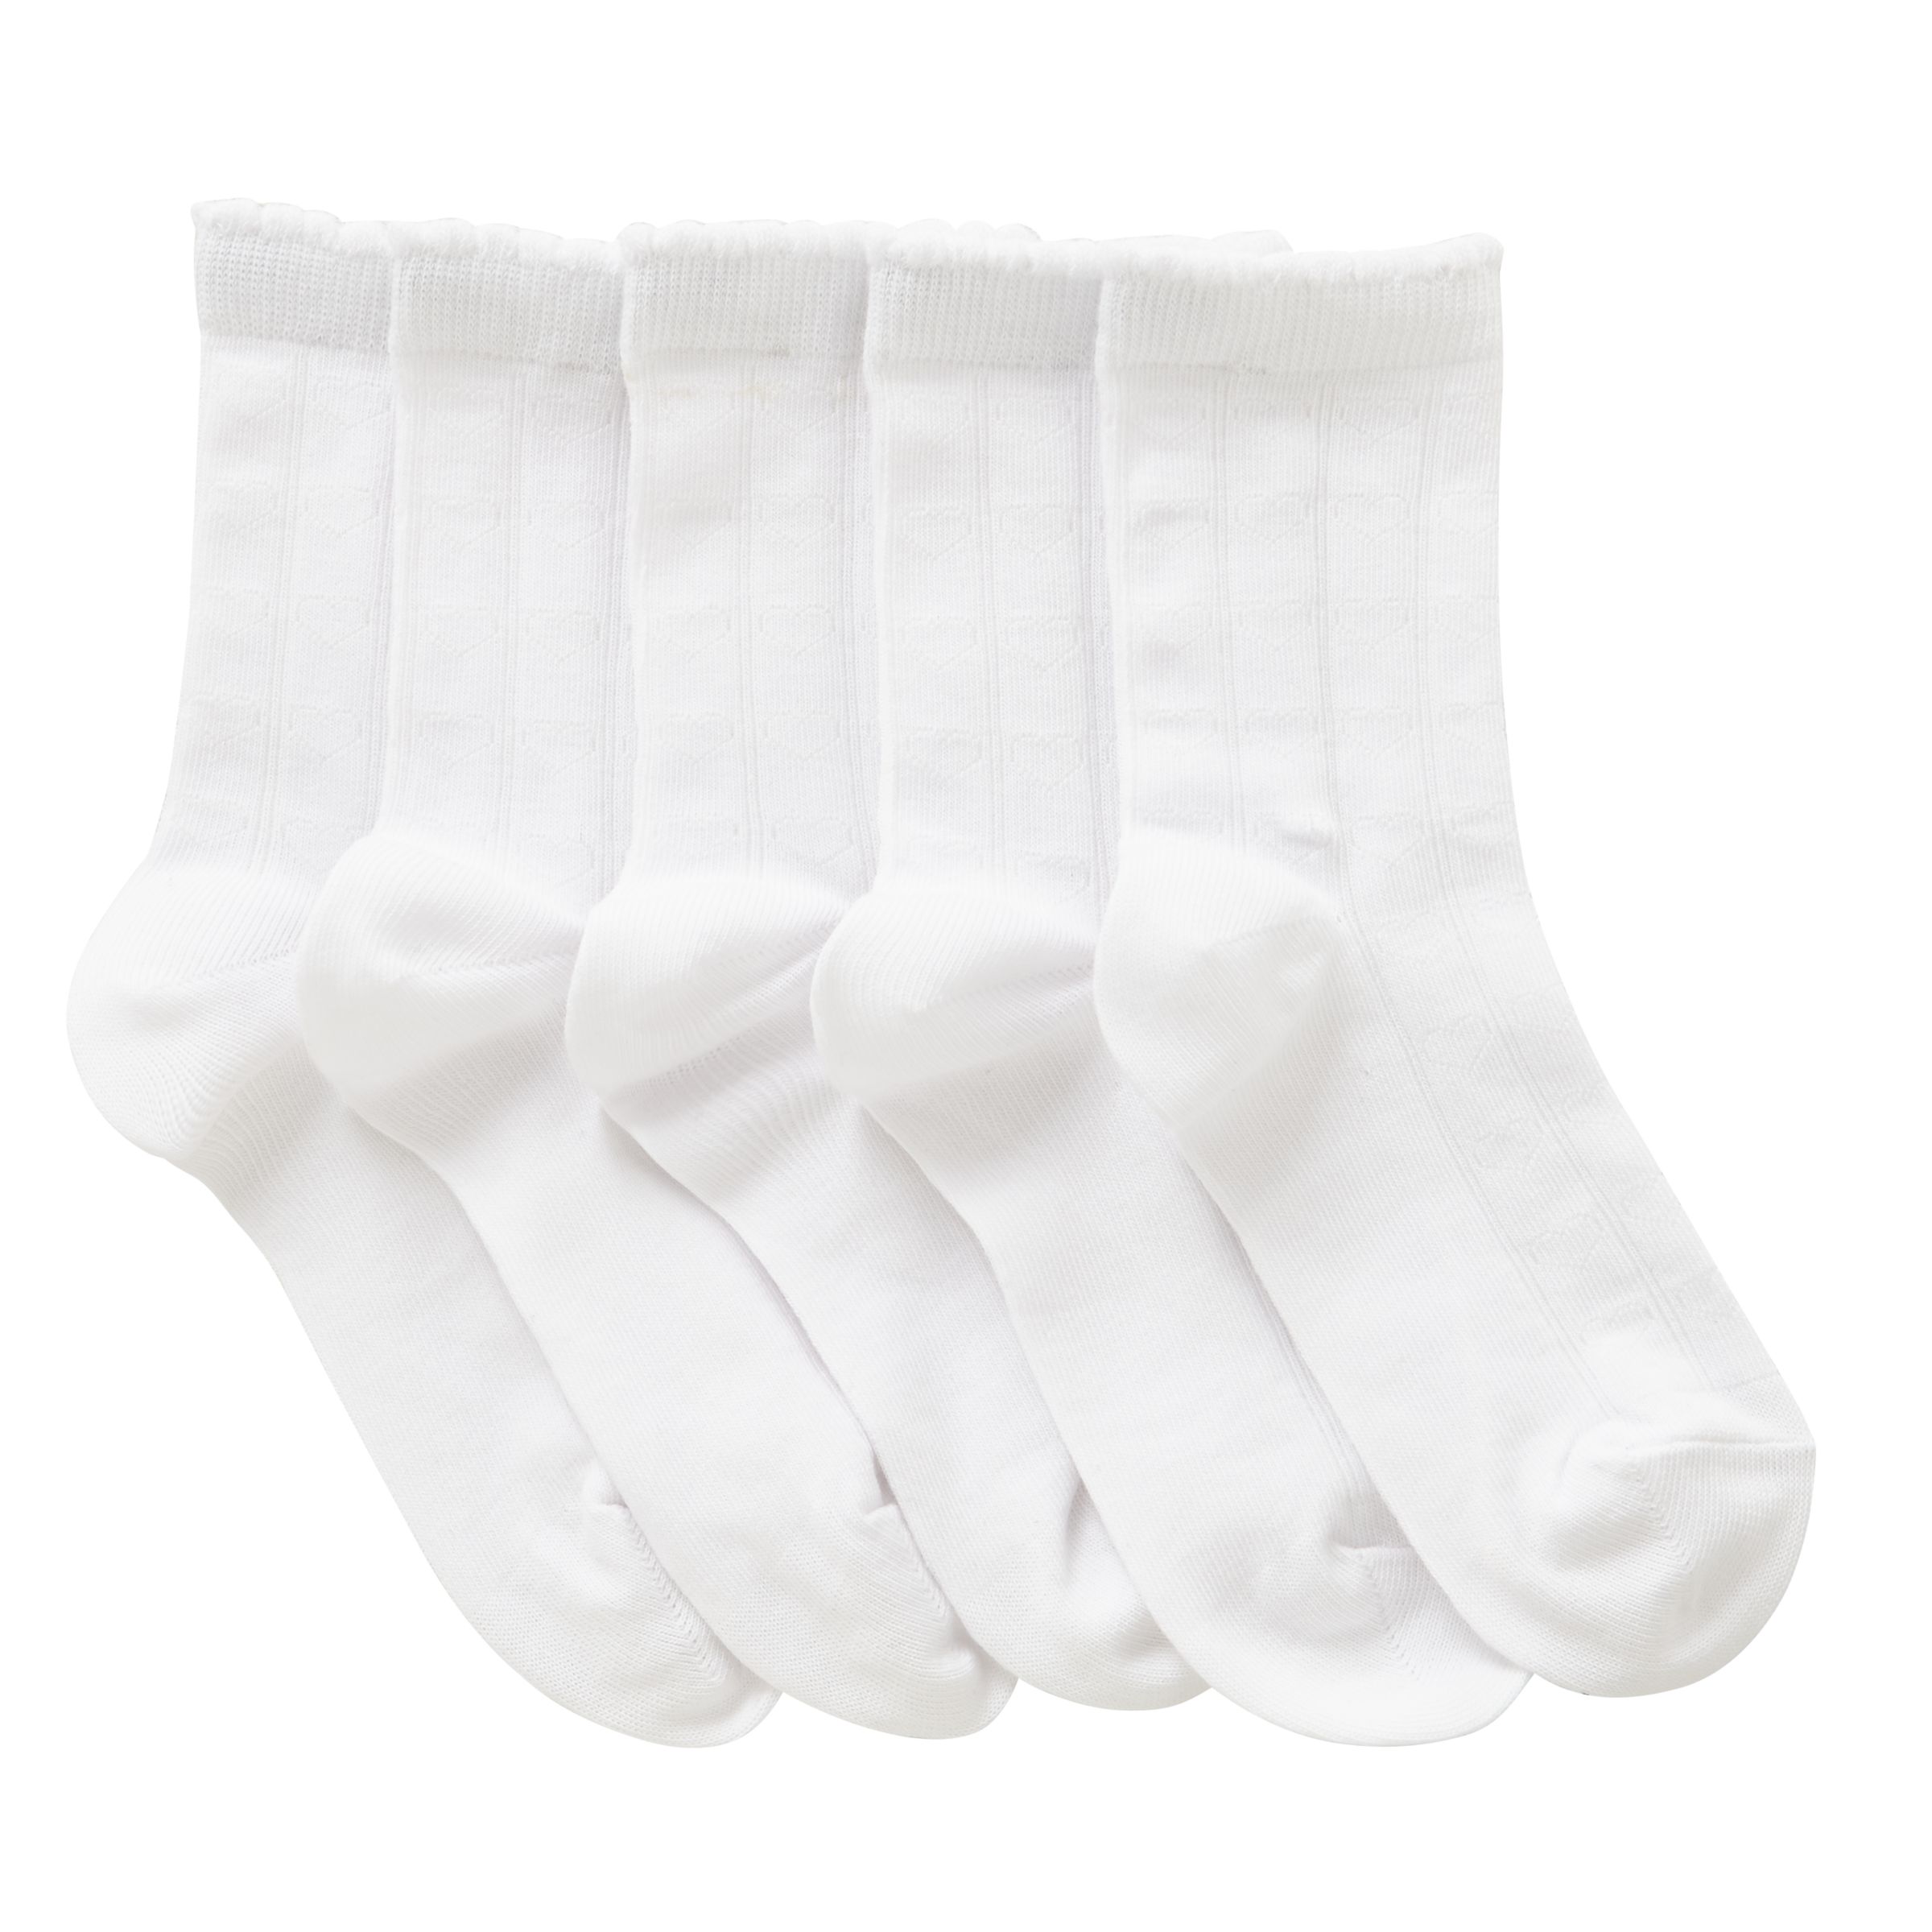 John Lewis & Partners Children's Heart Socks, Pack of 5, White